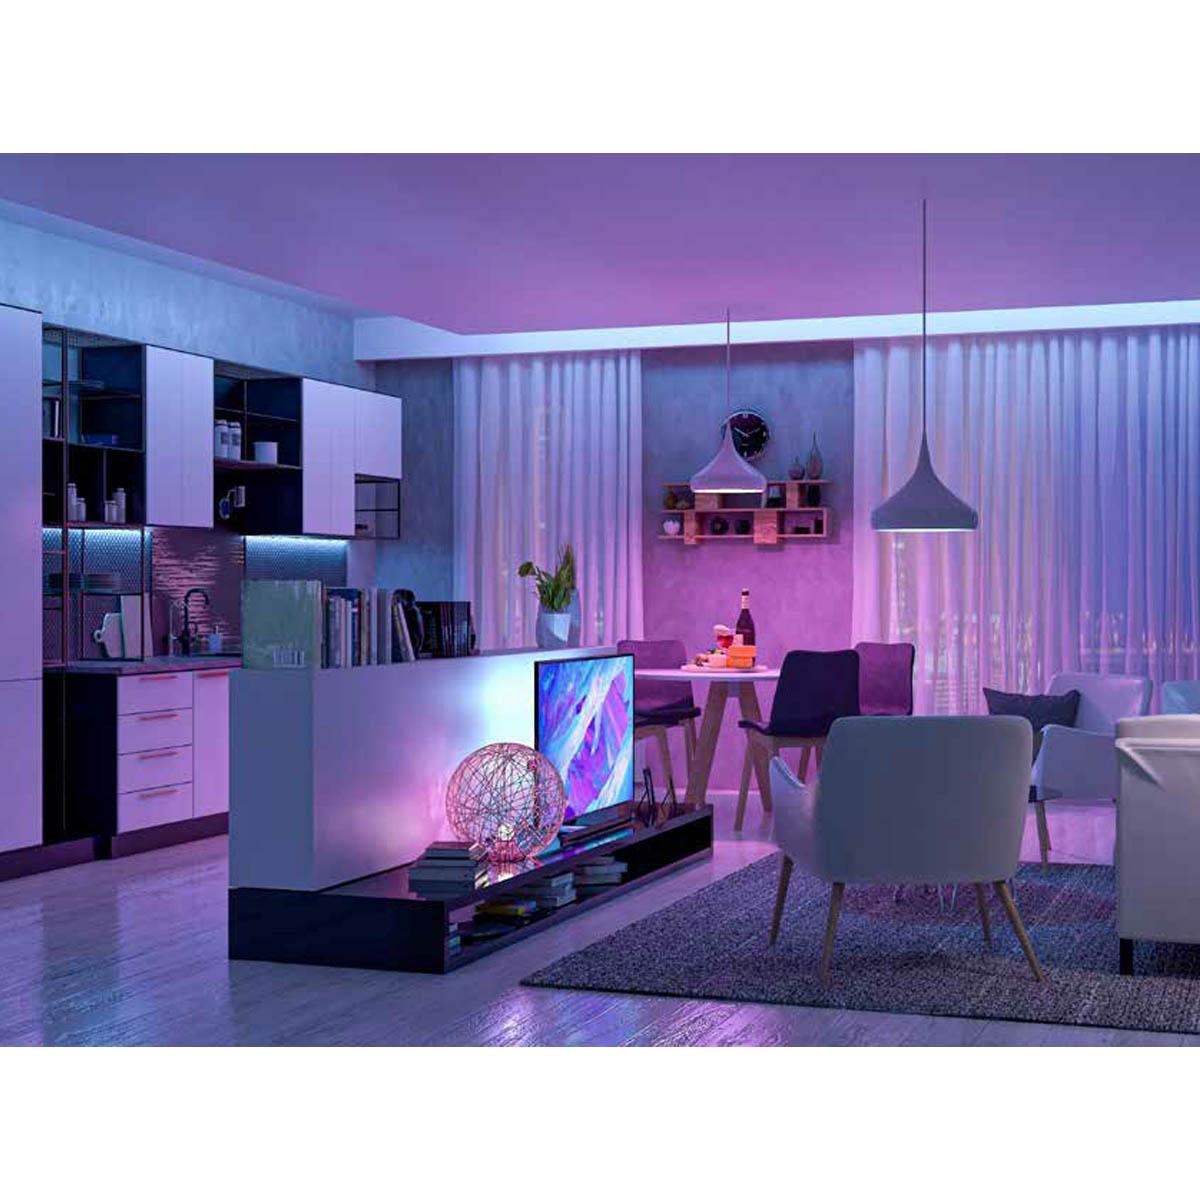 LTR-S Spec LED Strip Light, 16ft Reel, Color Changing RGB + 3000K, 210 Lumens per Ft, 24V - Bees Lighting